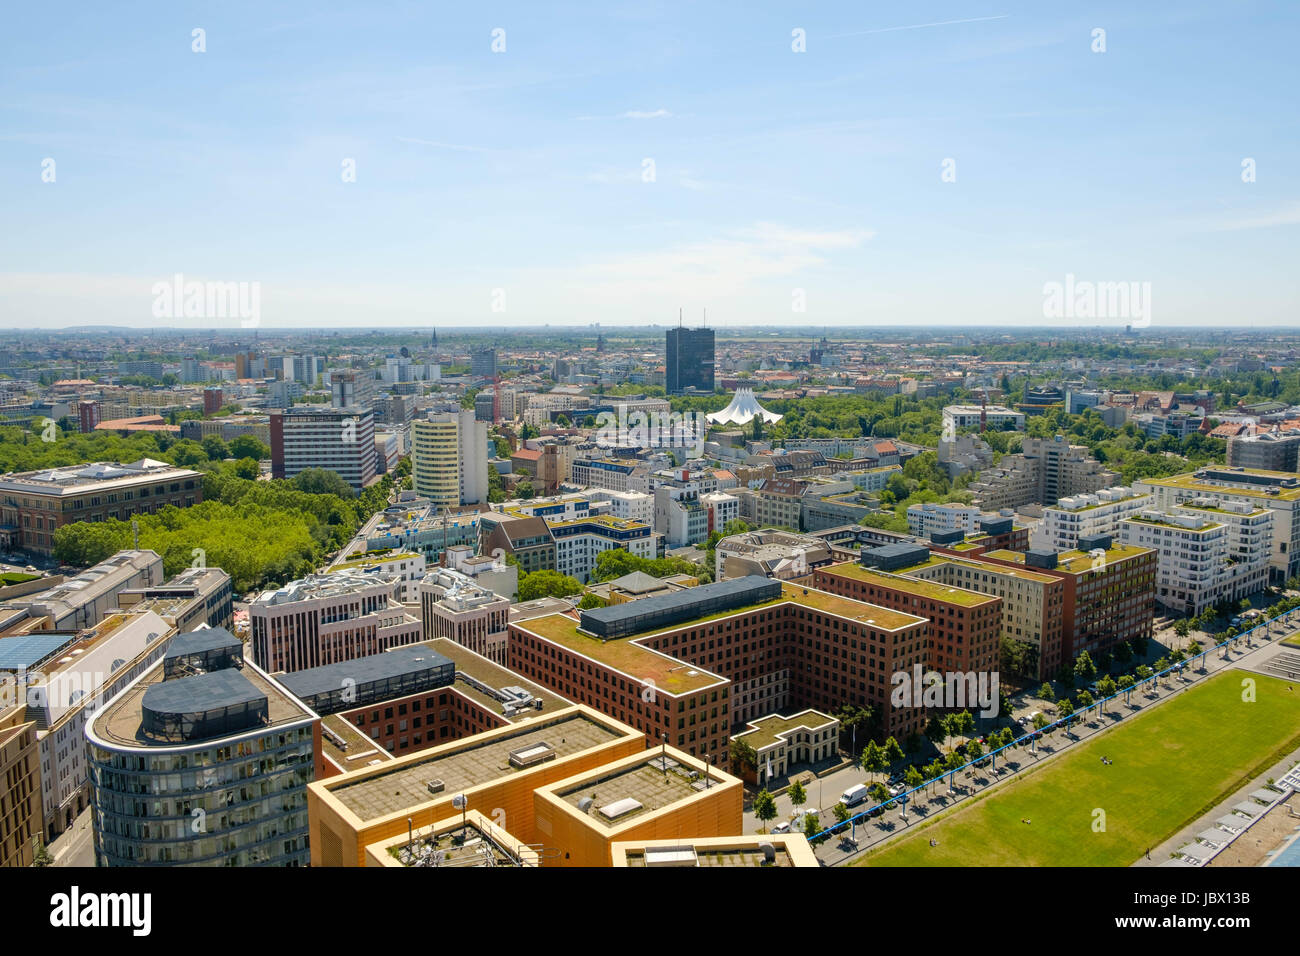 Skyline von Berlin Innenstadt - Antenne des Stadtzentrums Stockfoto